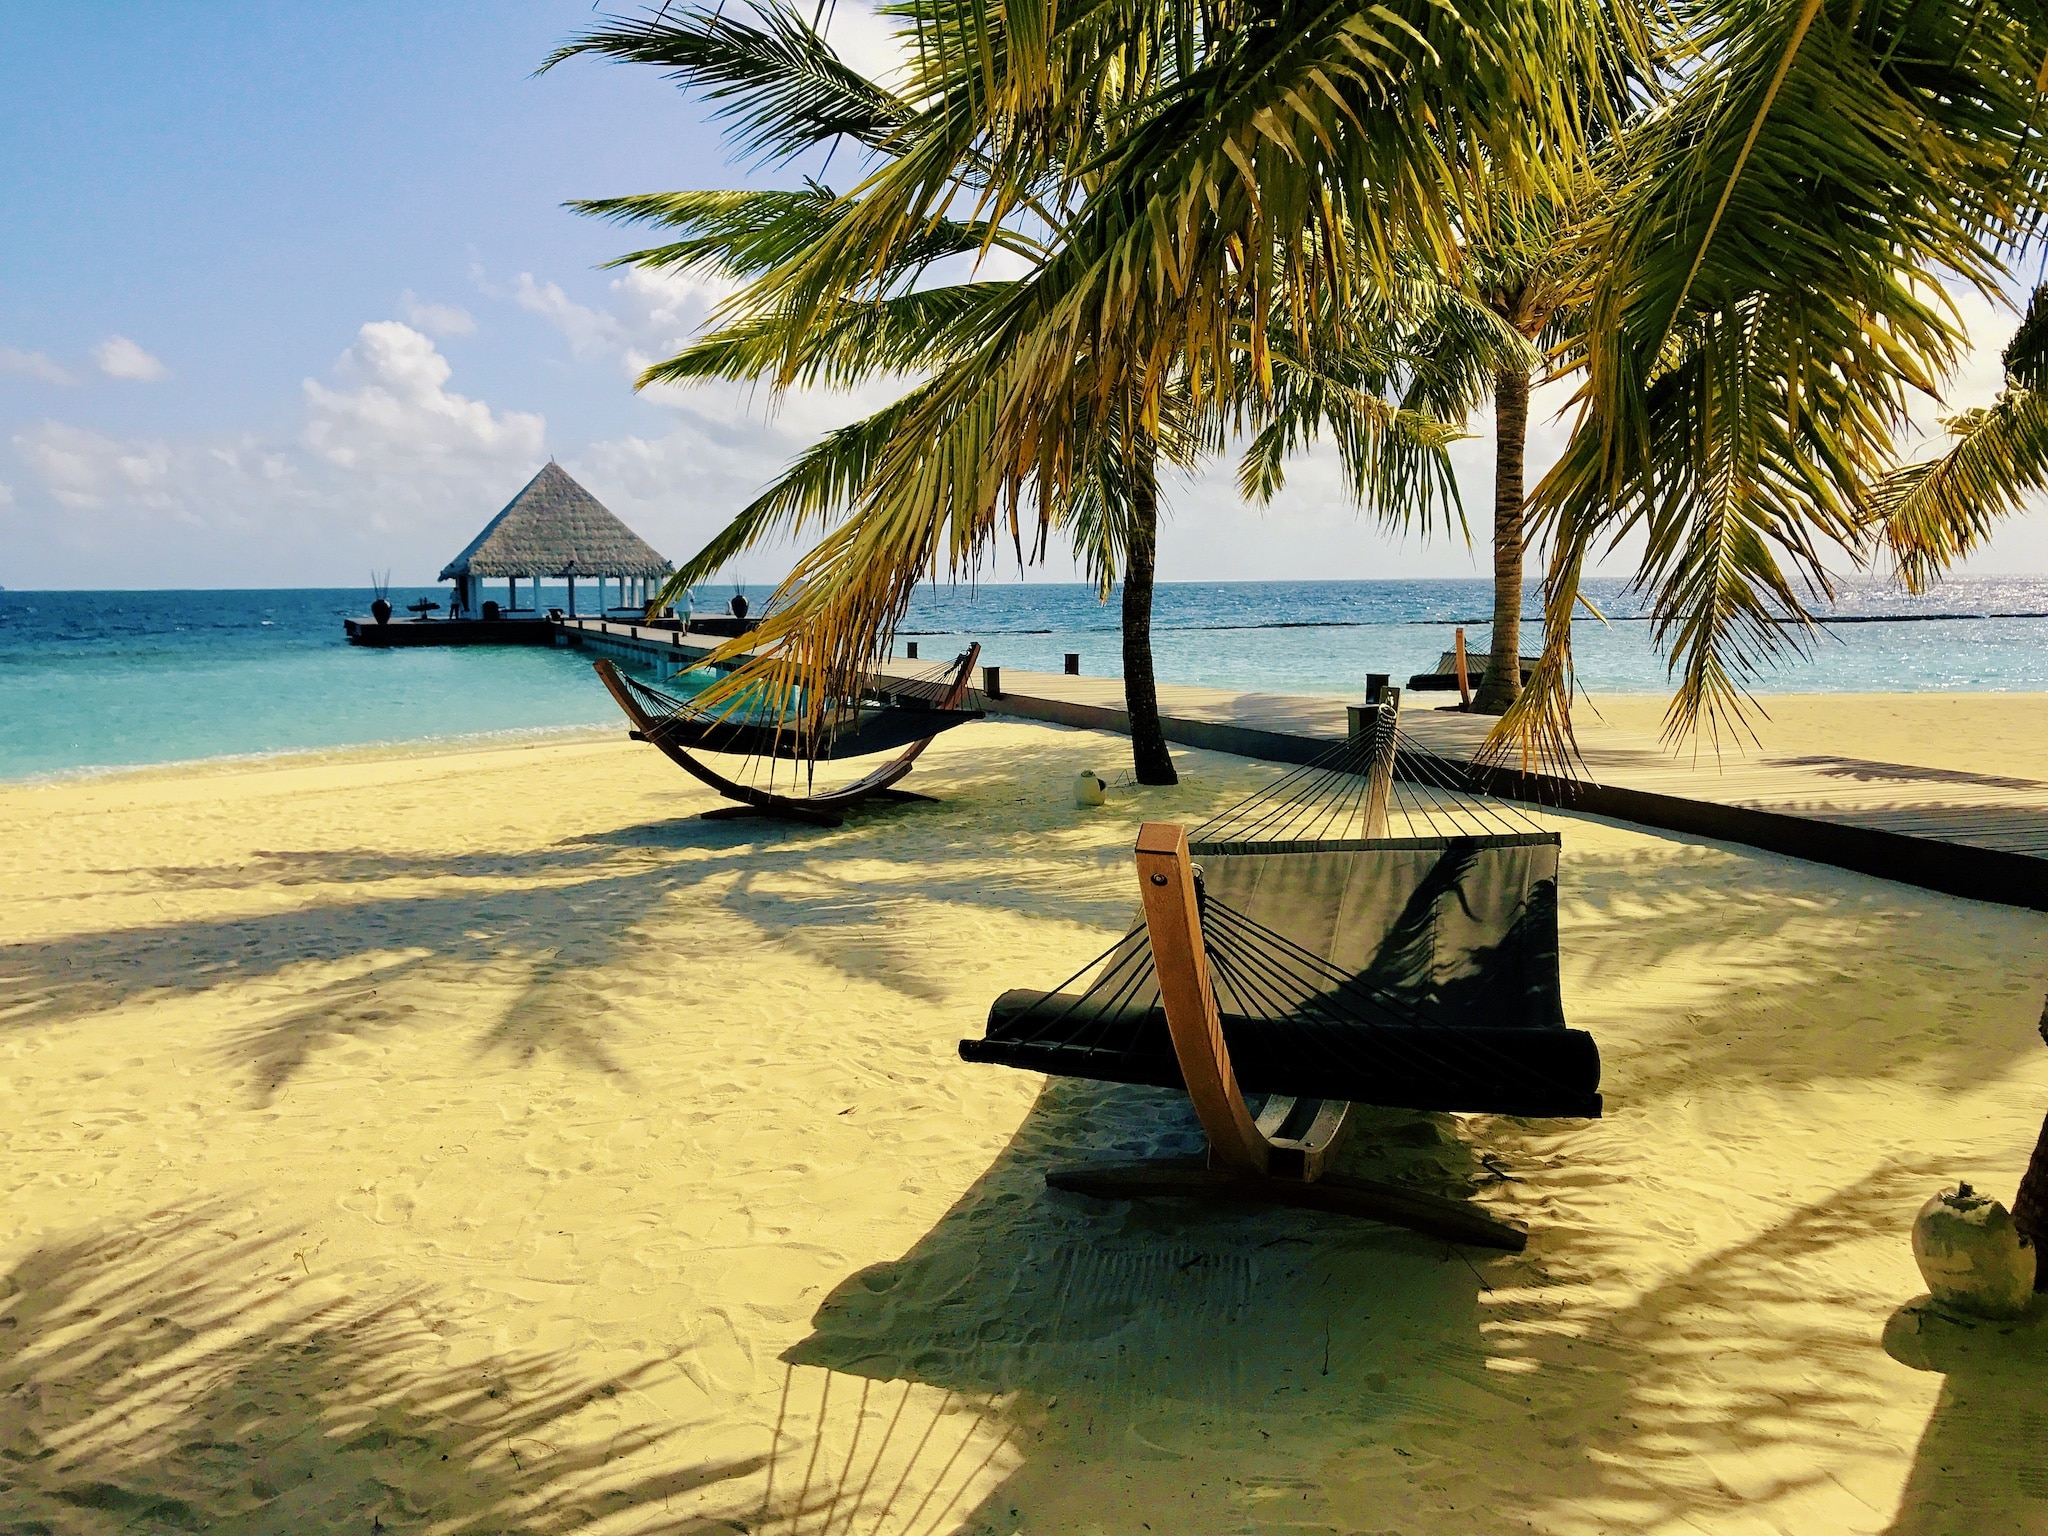 Reserve unas vacaciones económicas en Maldivas: consejos y experiencias para la isla paradisíaca